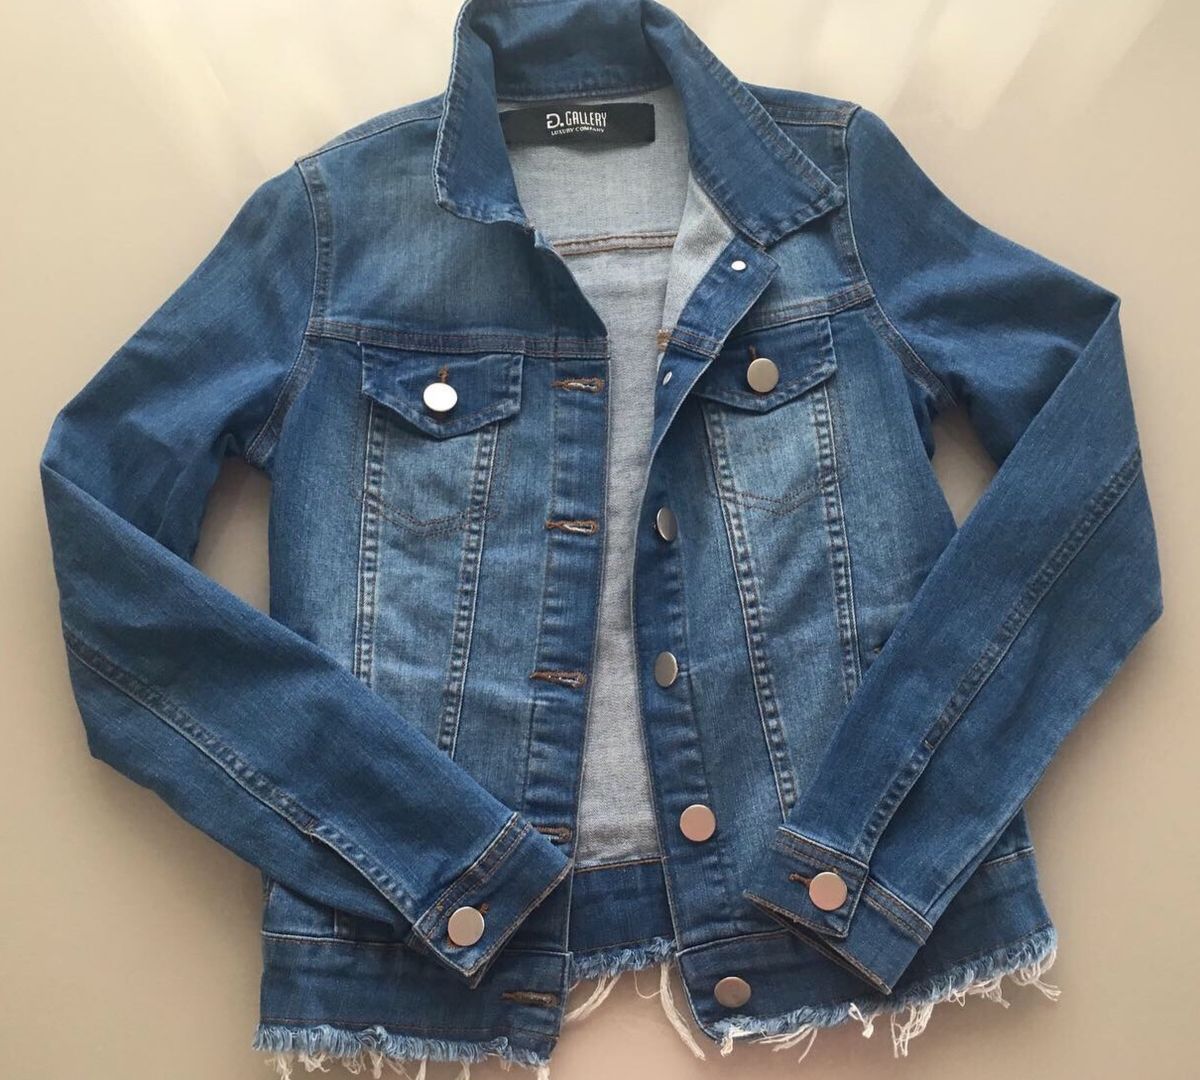 jaqueta jeans com detalhes nas costas